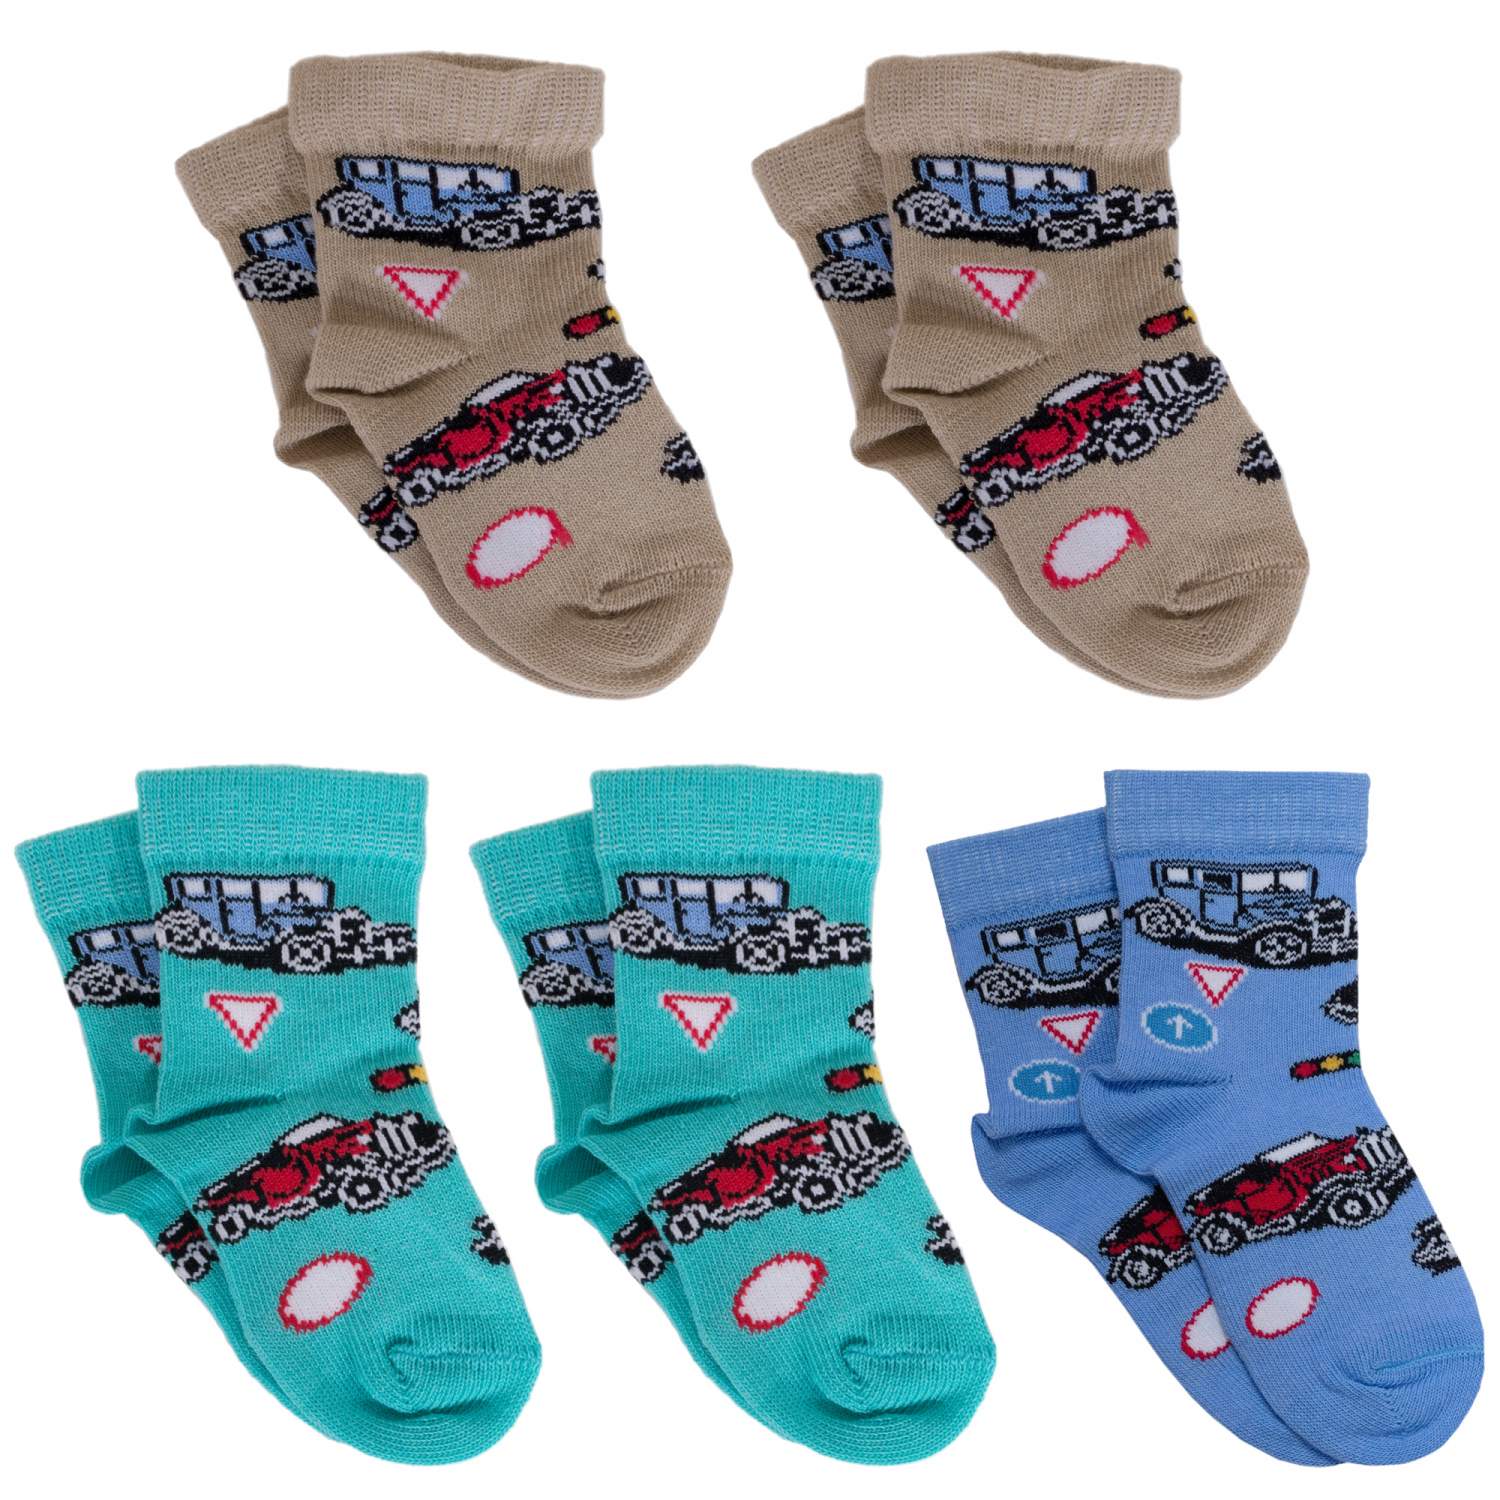 Купить носки для мальчиков LorenzLine 5-Л64 цв. бежевый; голубой; бирюзовый  р. 18, цены на Мегамаркет | Артикул: 600008577040